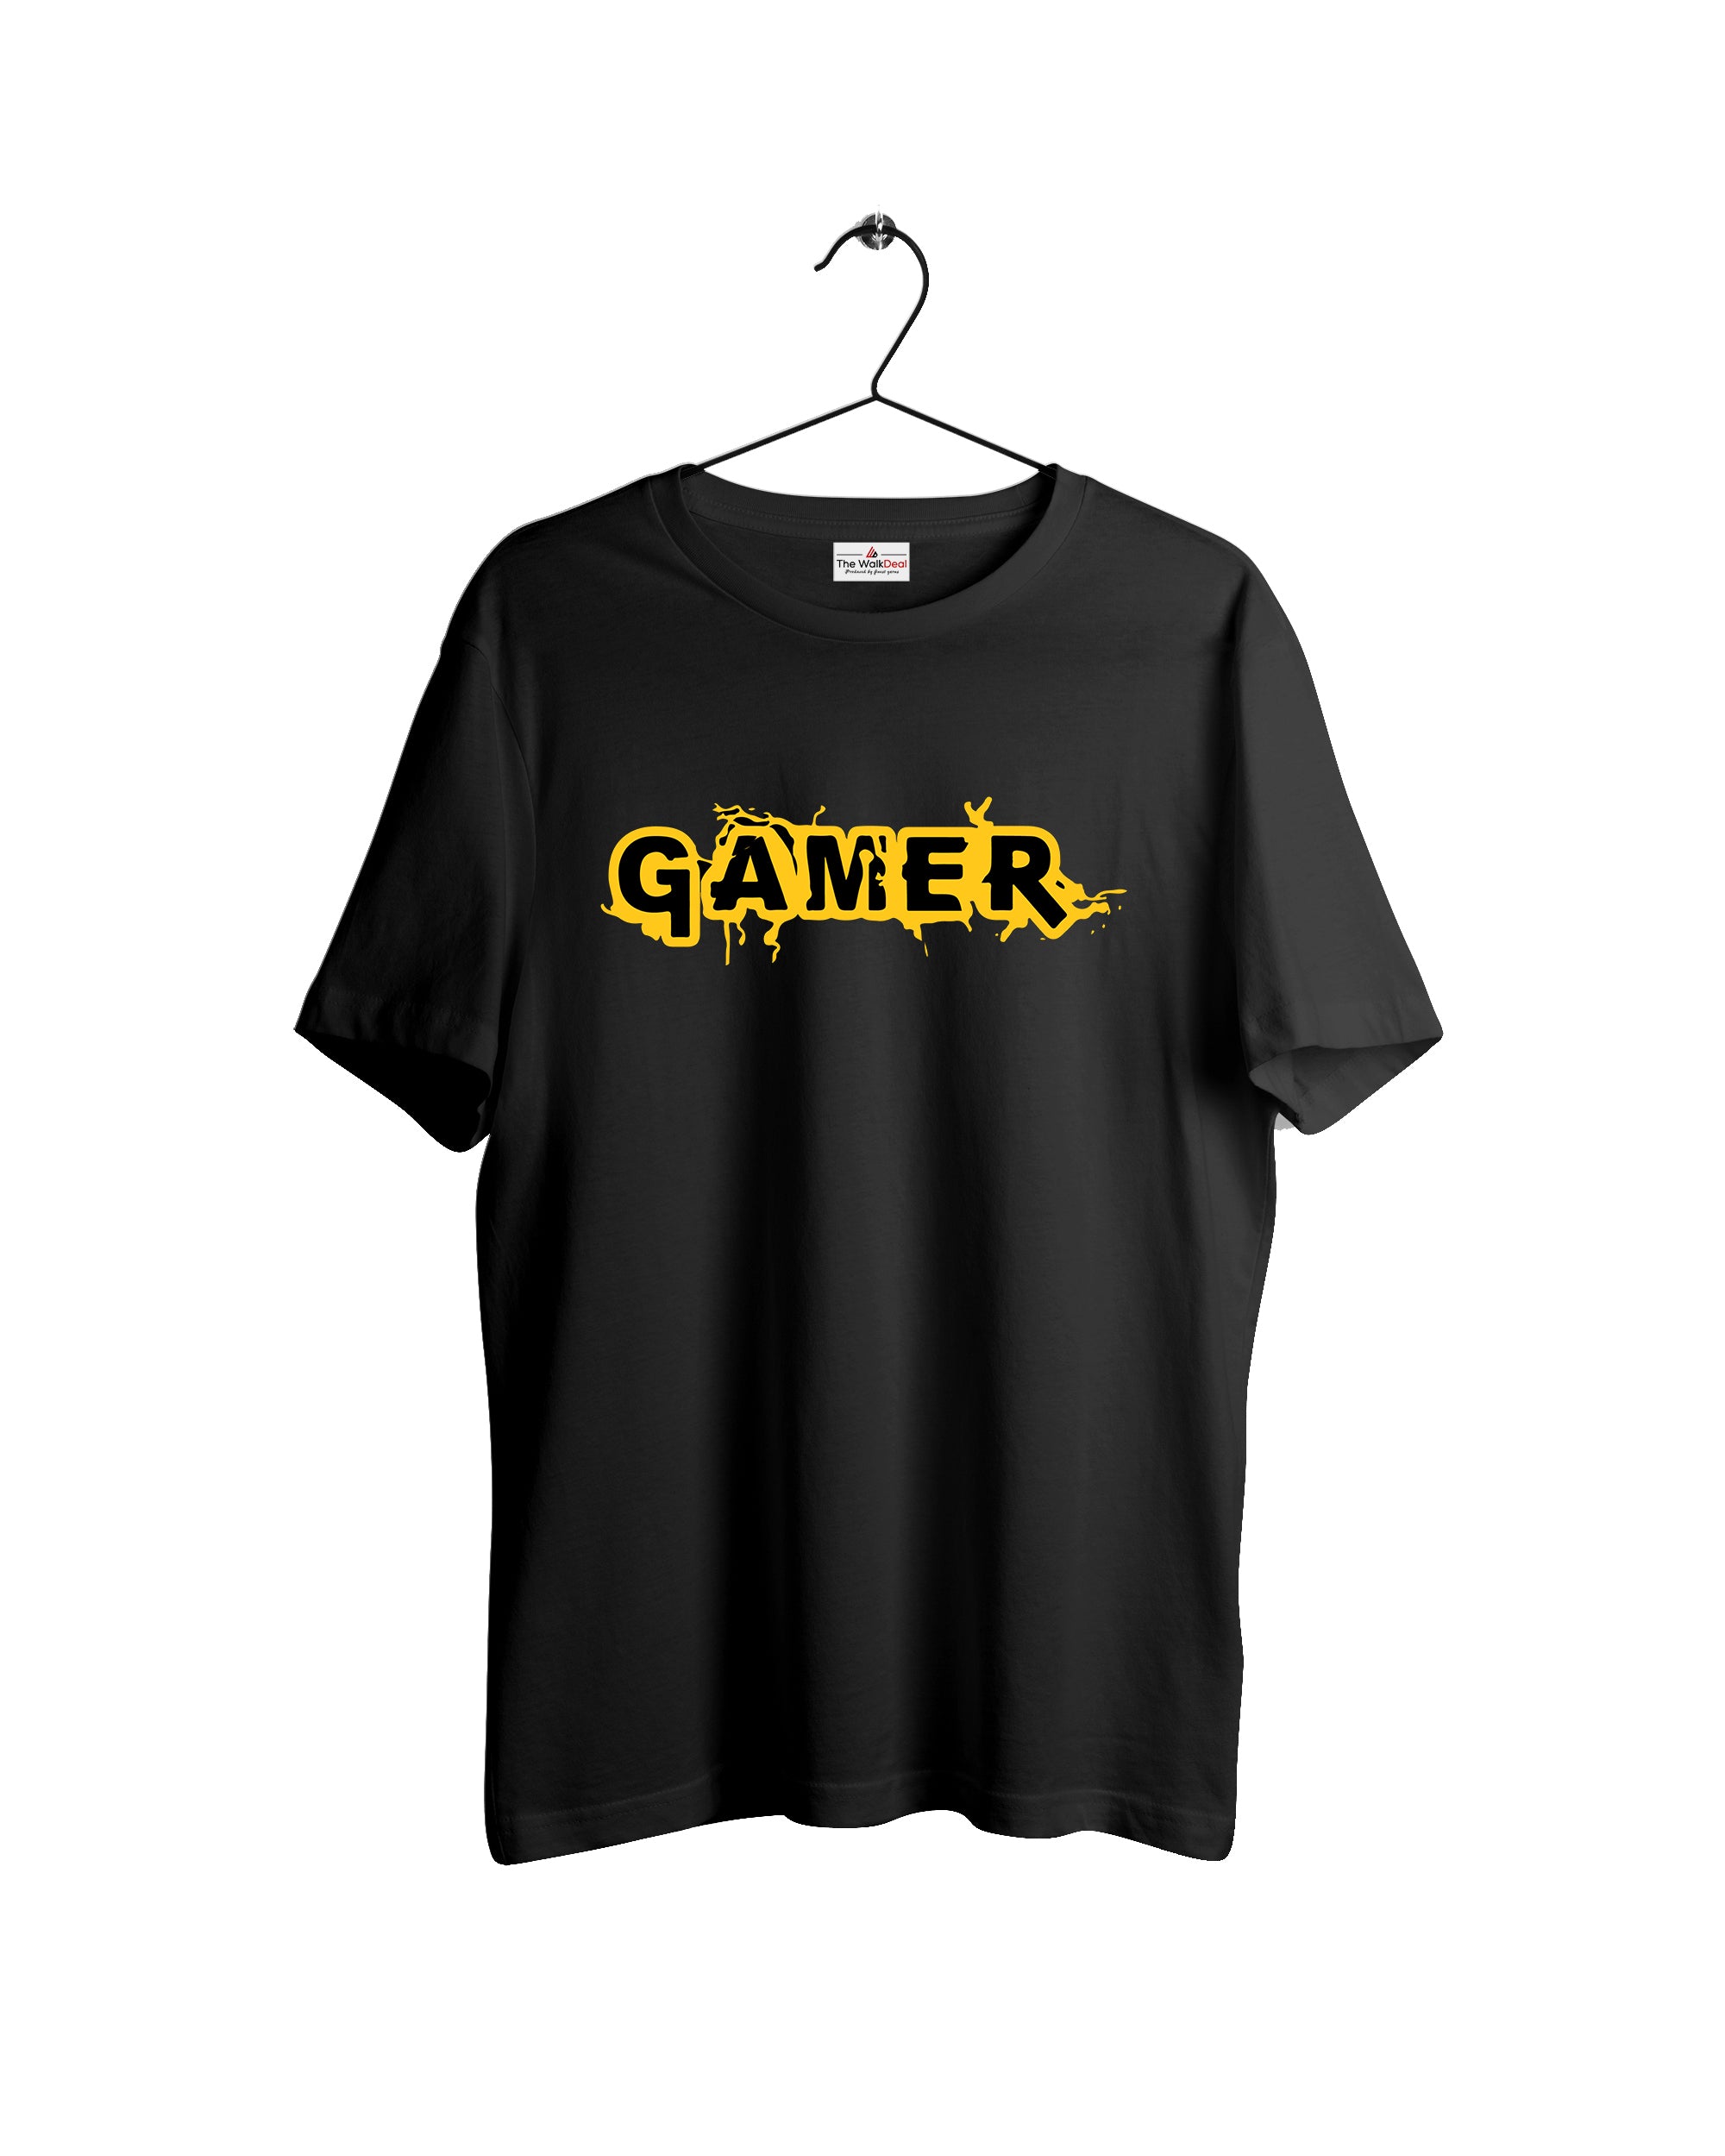 Gamer T-Shirt For Men